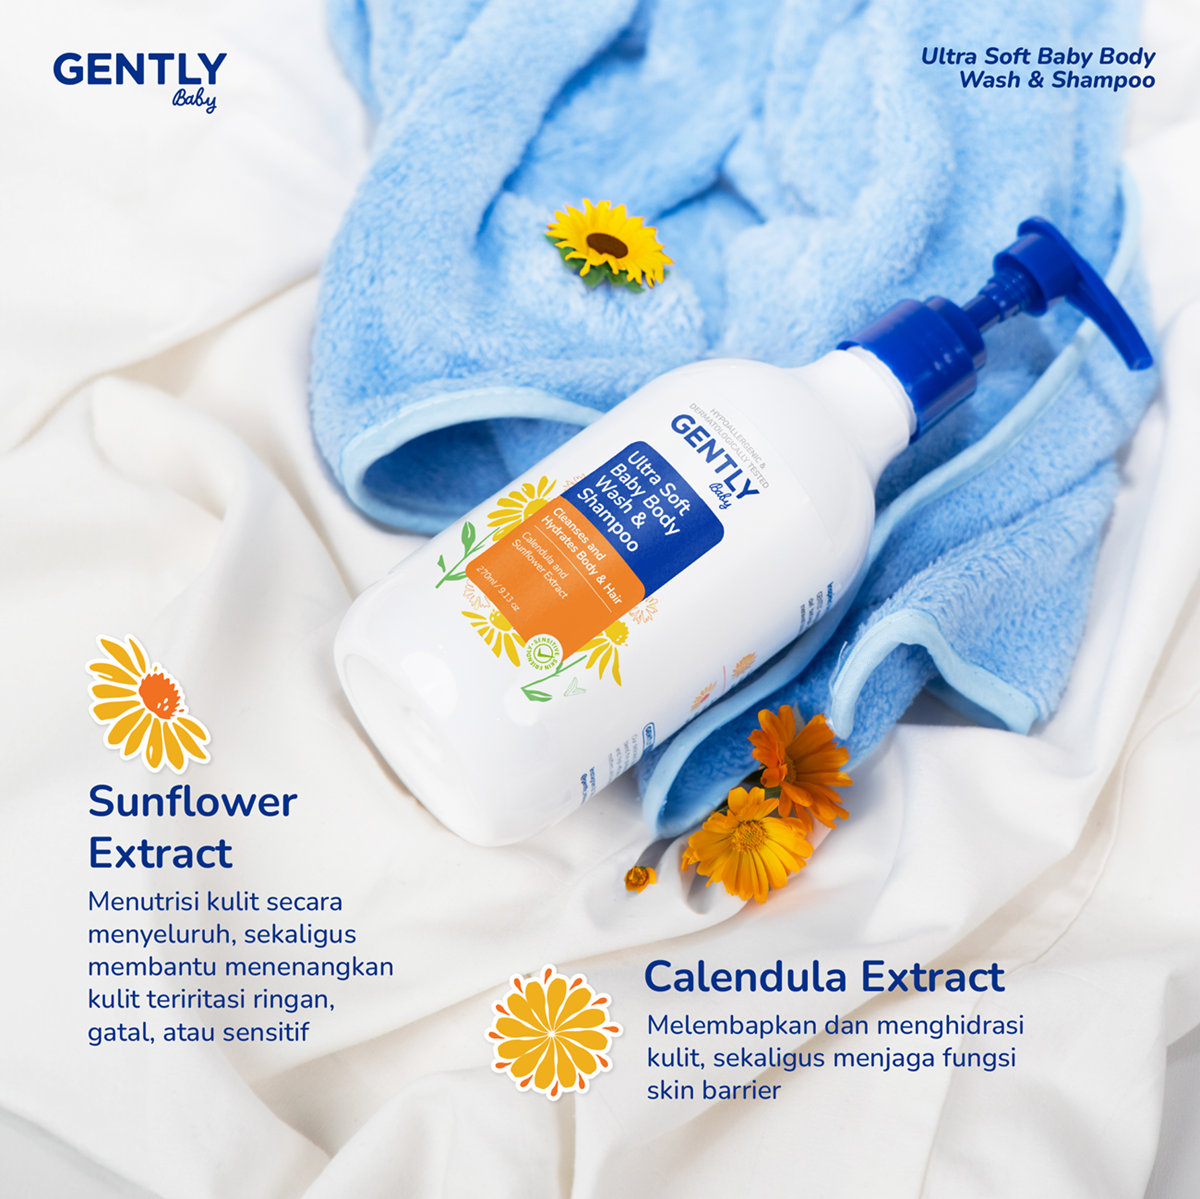 Gently Ultra Soft Body Wash & Shampoo